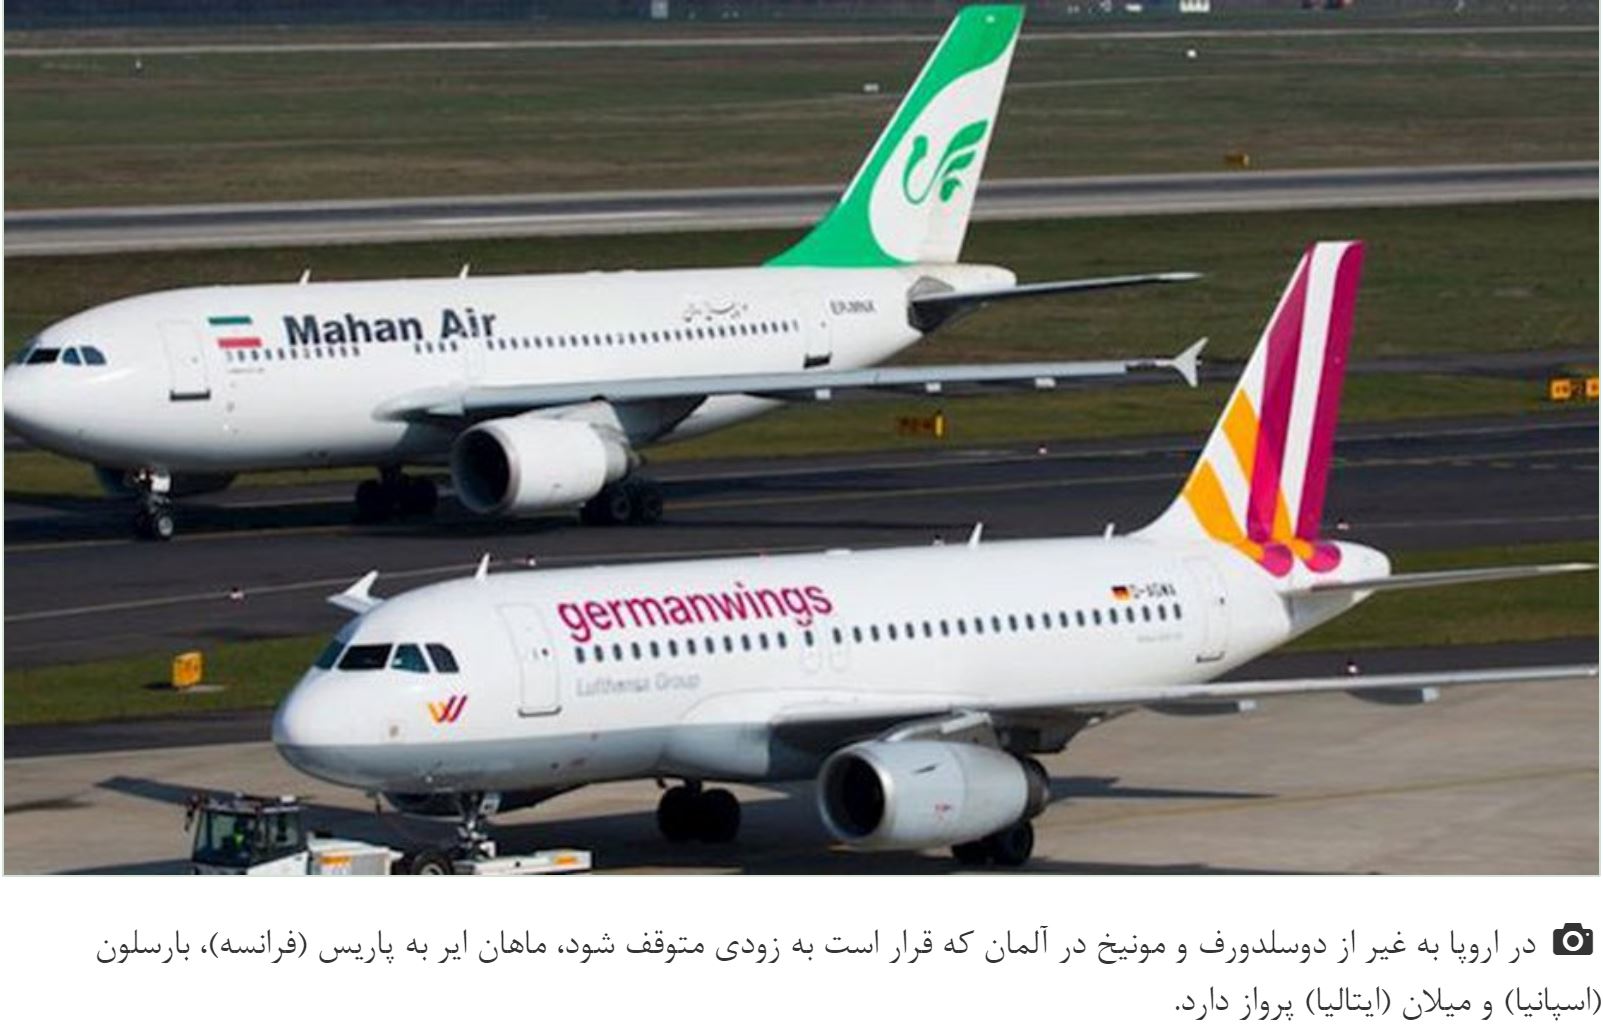 ماهان ایر، دومین شرکت بزرگ هوایی ایران قربانی مداخلات نظامی